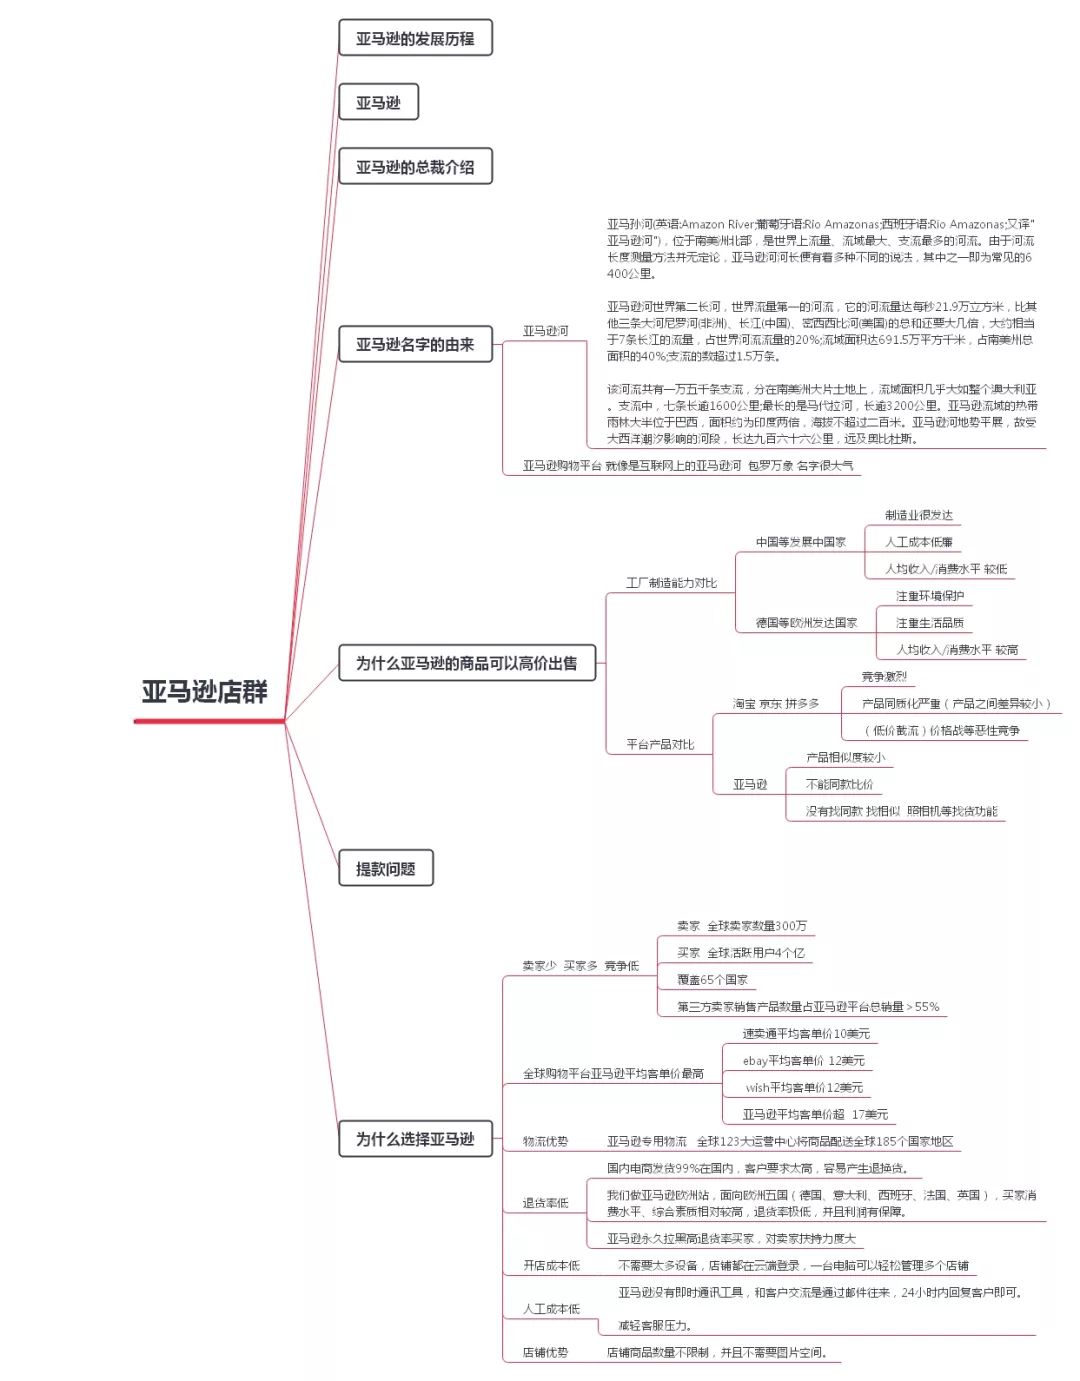 【2020年】<a href='https://www.zhouxiaohui.cn/kuajing/
' target='_blank'>跨境电商</a>的店群模式怎么做？-第11张图片-周小辉博客